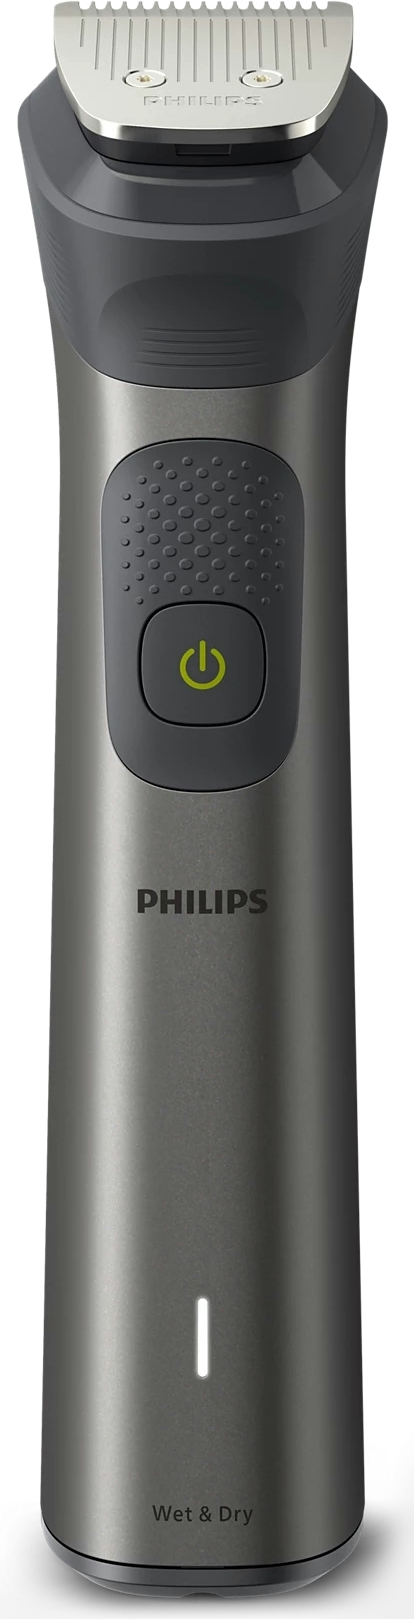 Тример універсальний Philips MG7950/15 series 7000 15-в-1фото2